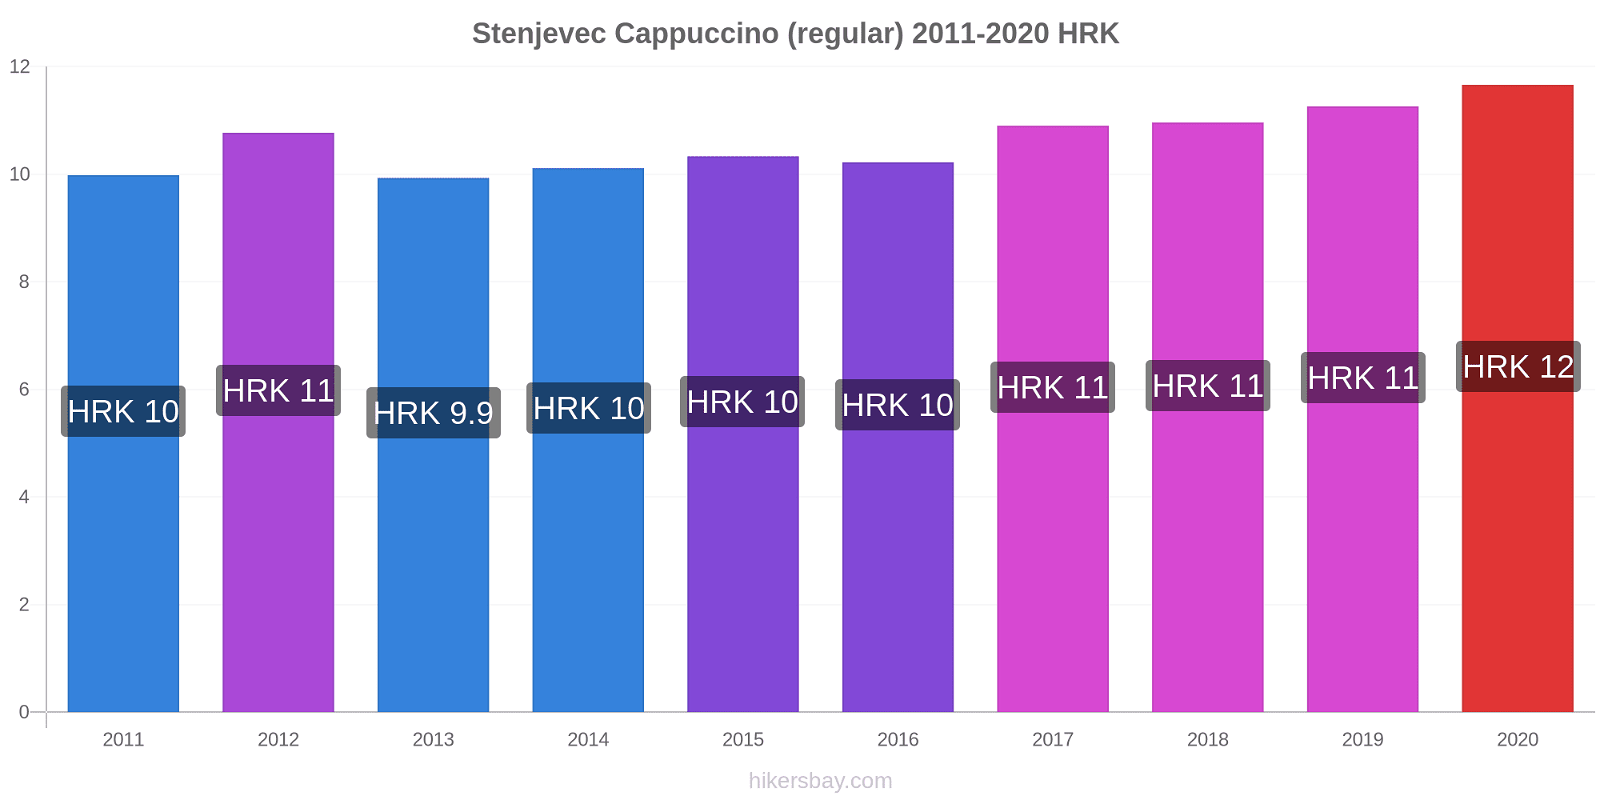 Stenjevec price changes Cappuccino (regular) hikersbay.com